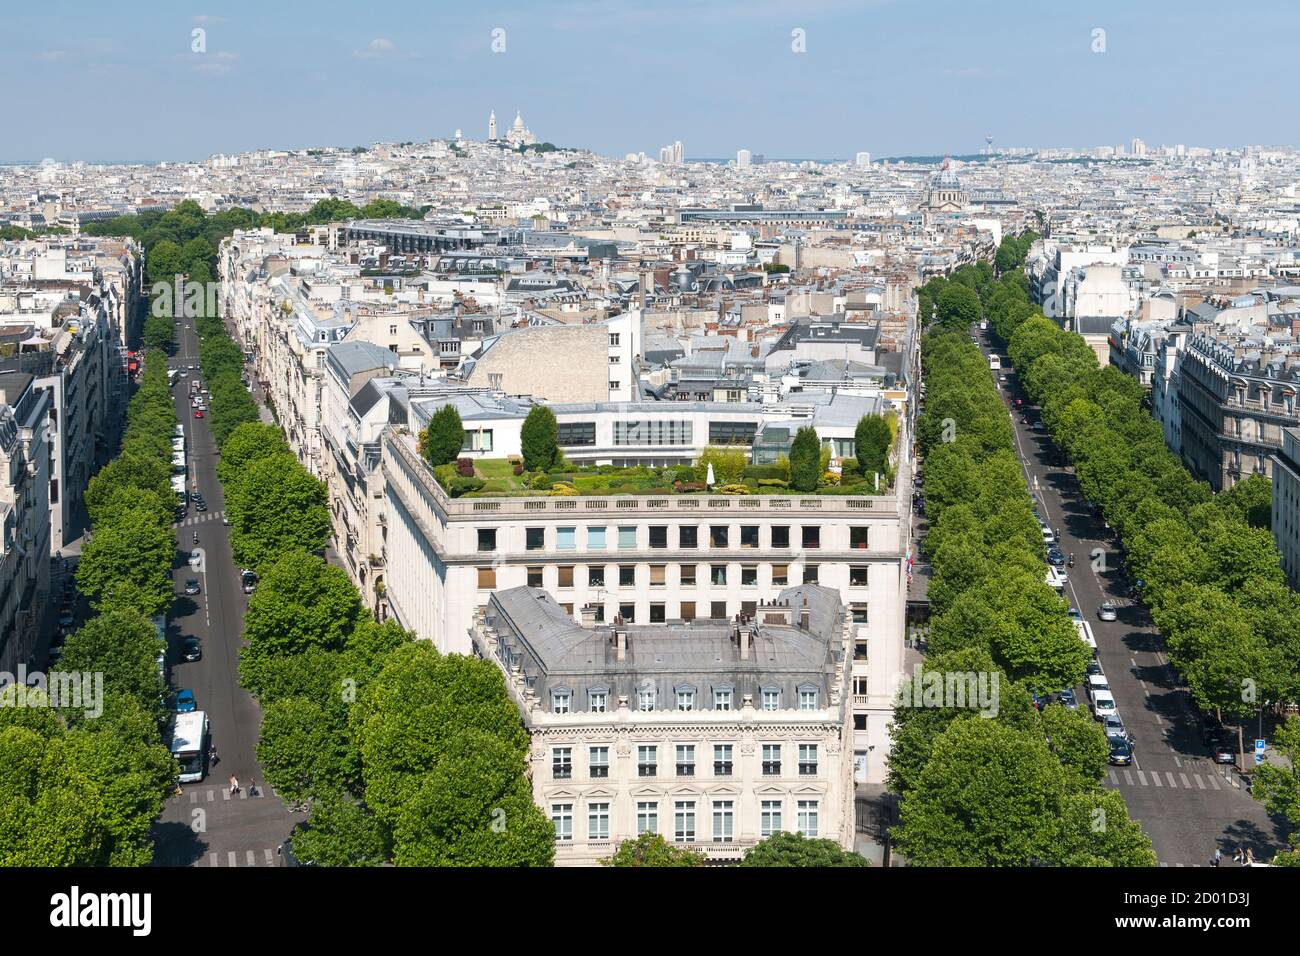 Vue sur Paris depuis le sommet de l'Arc de Triomphe. L'avenue de Friedland se trouve sur le côté droit et l'avenue Hoche sur le côté gauche de l'image. Banque D'Images